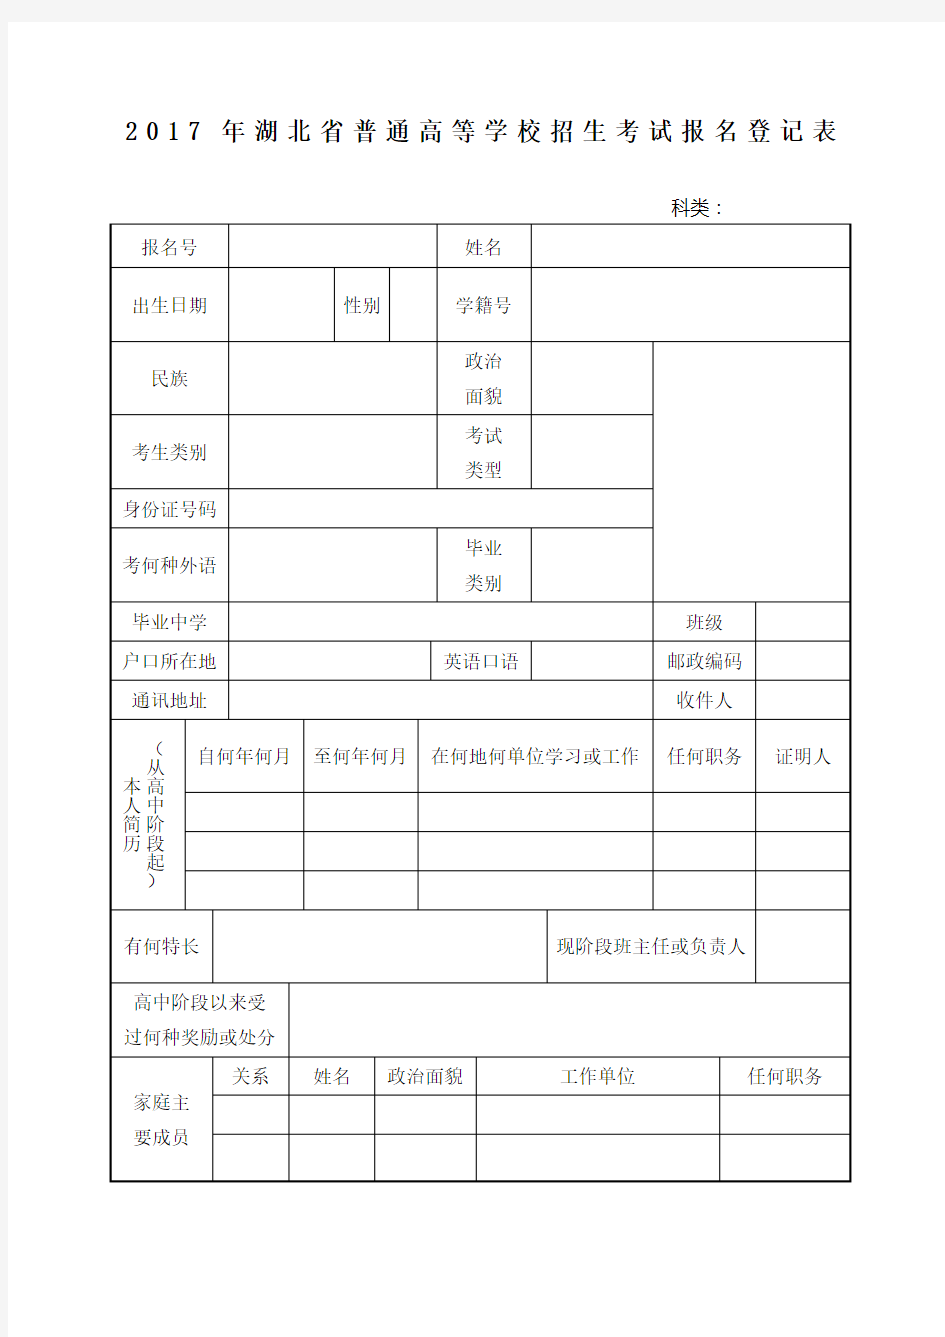 湖北省普通高等学校招生考试报名登记表